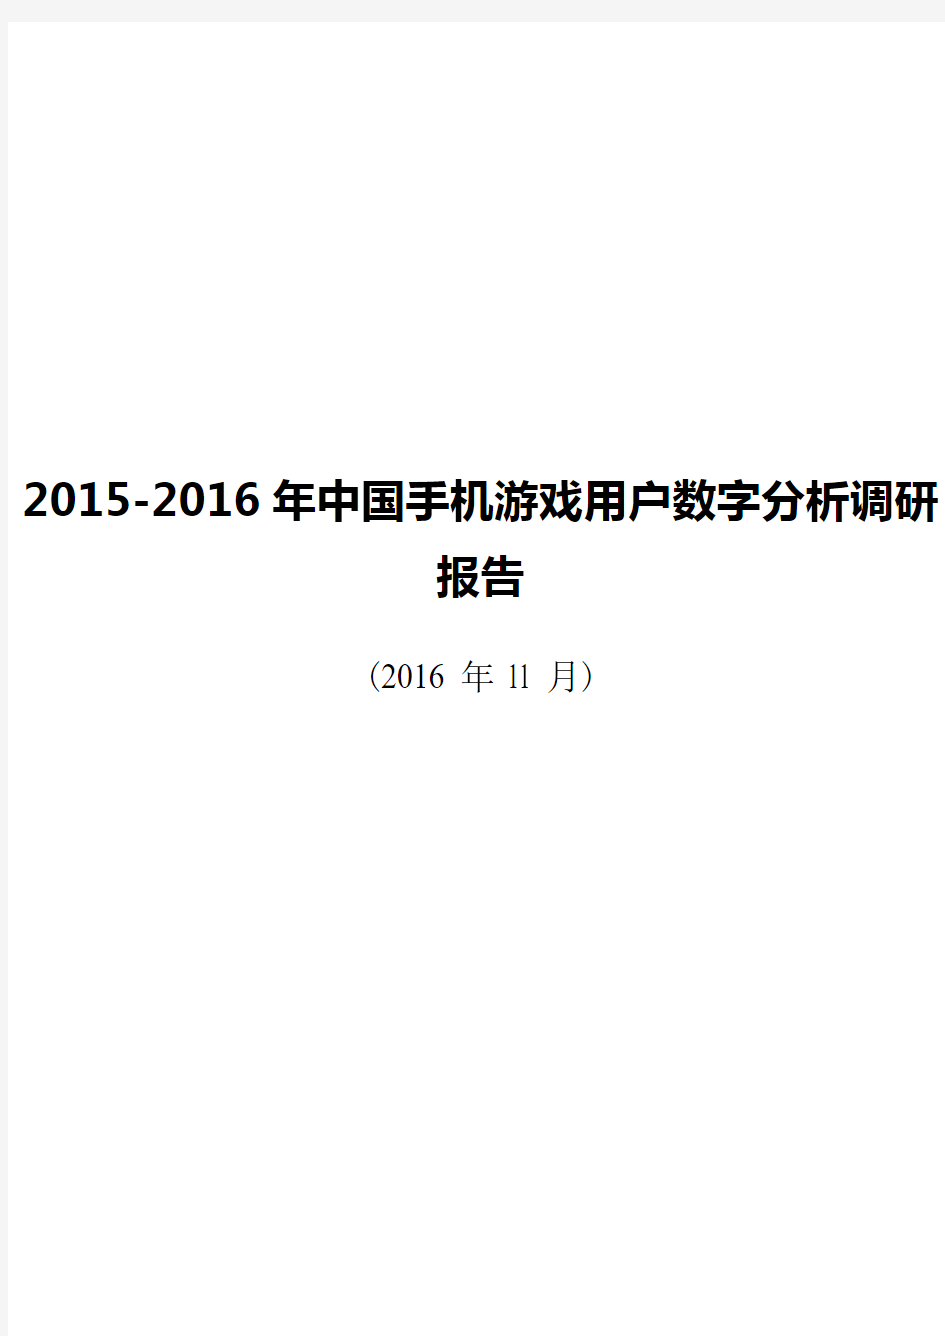 2015-2016年中国手机游戏用户数字分析调研报告【完整定稿】